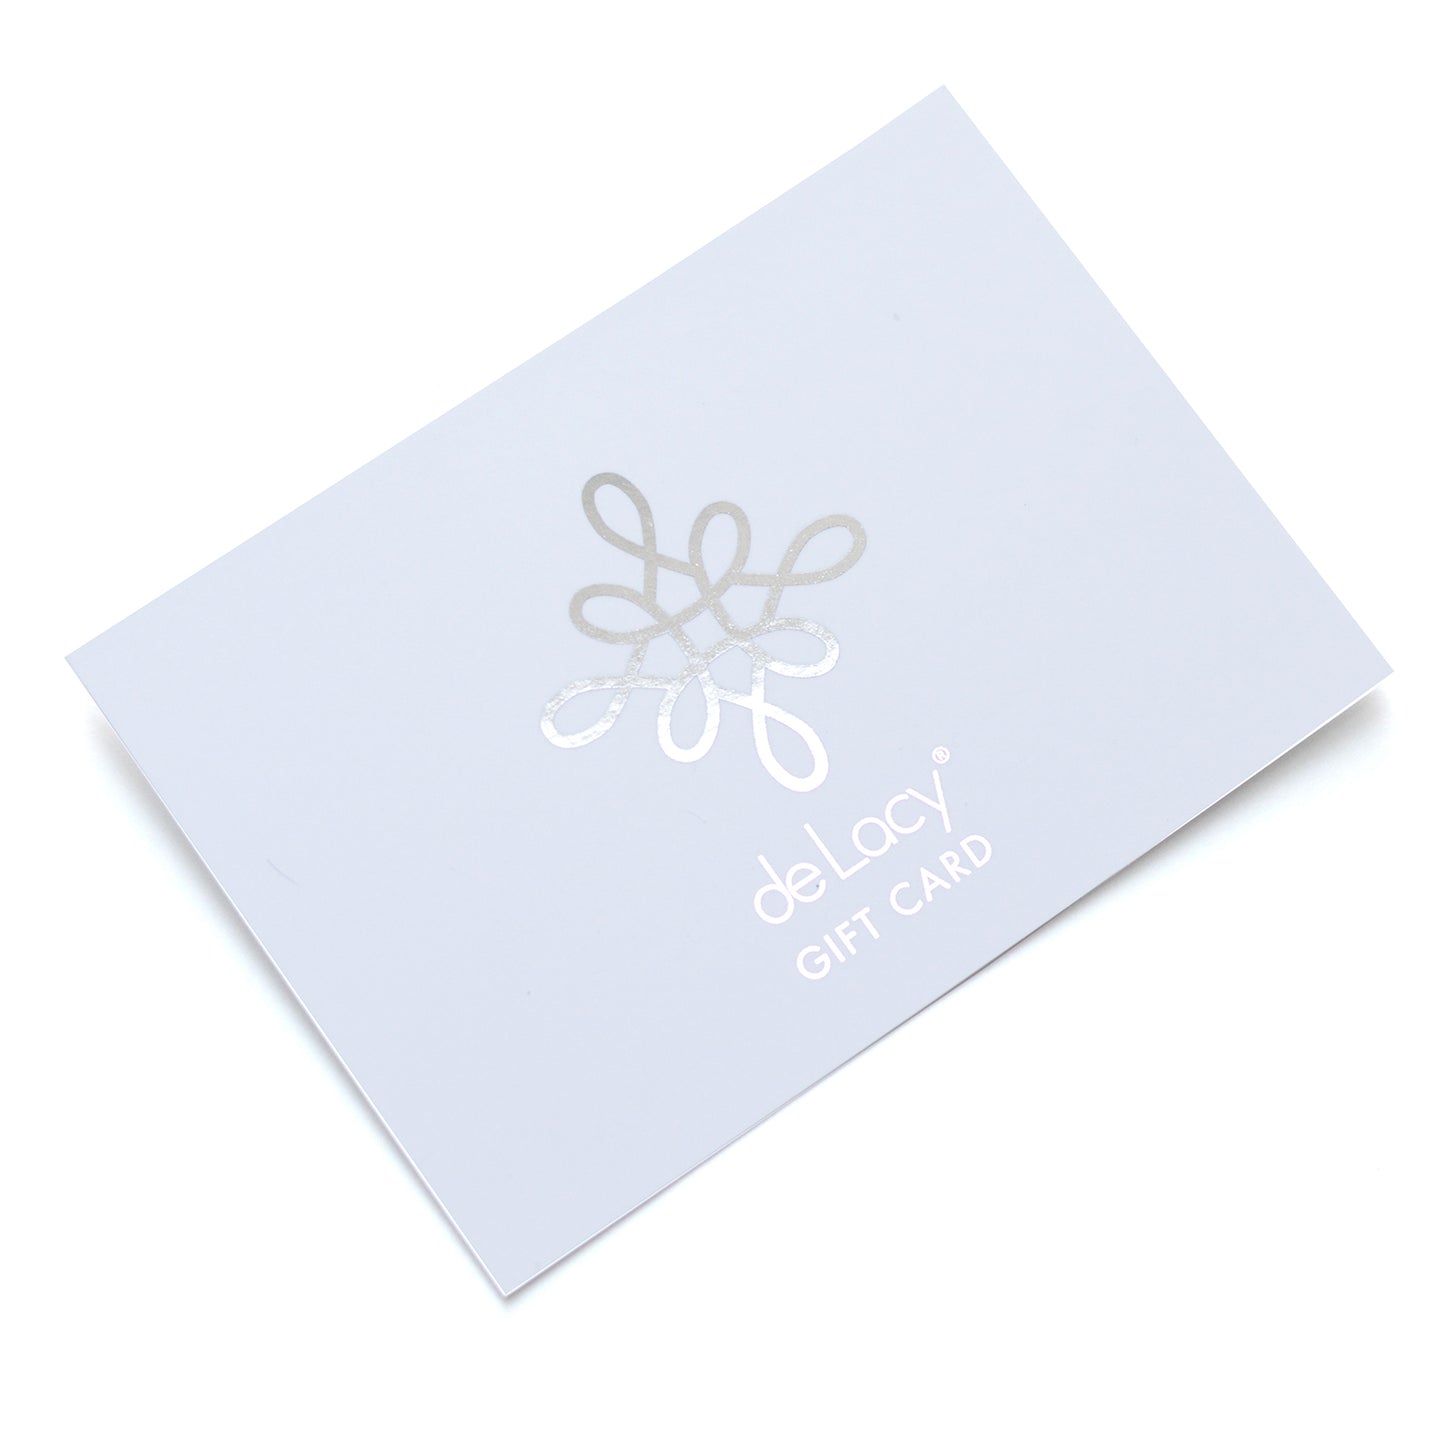 de Lacy Gift Card - delacyonline - 1